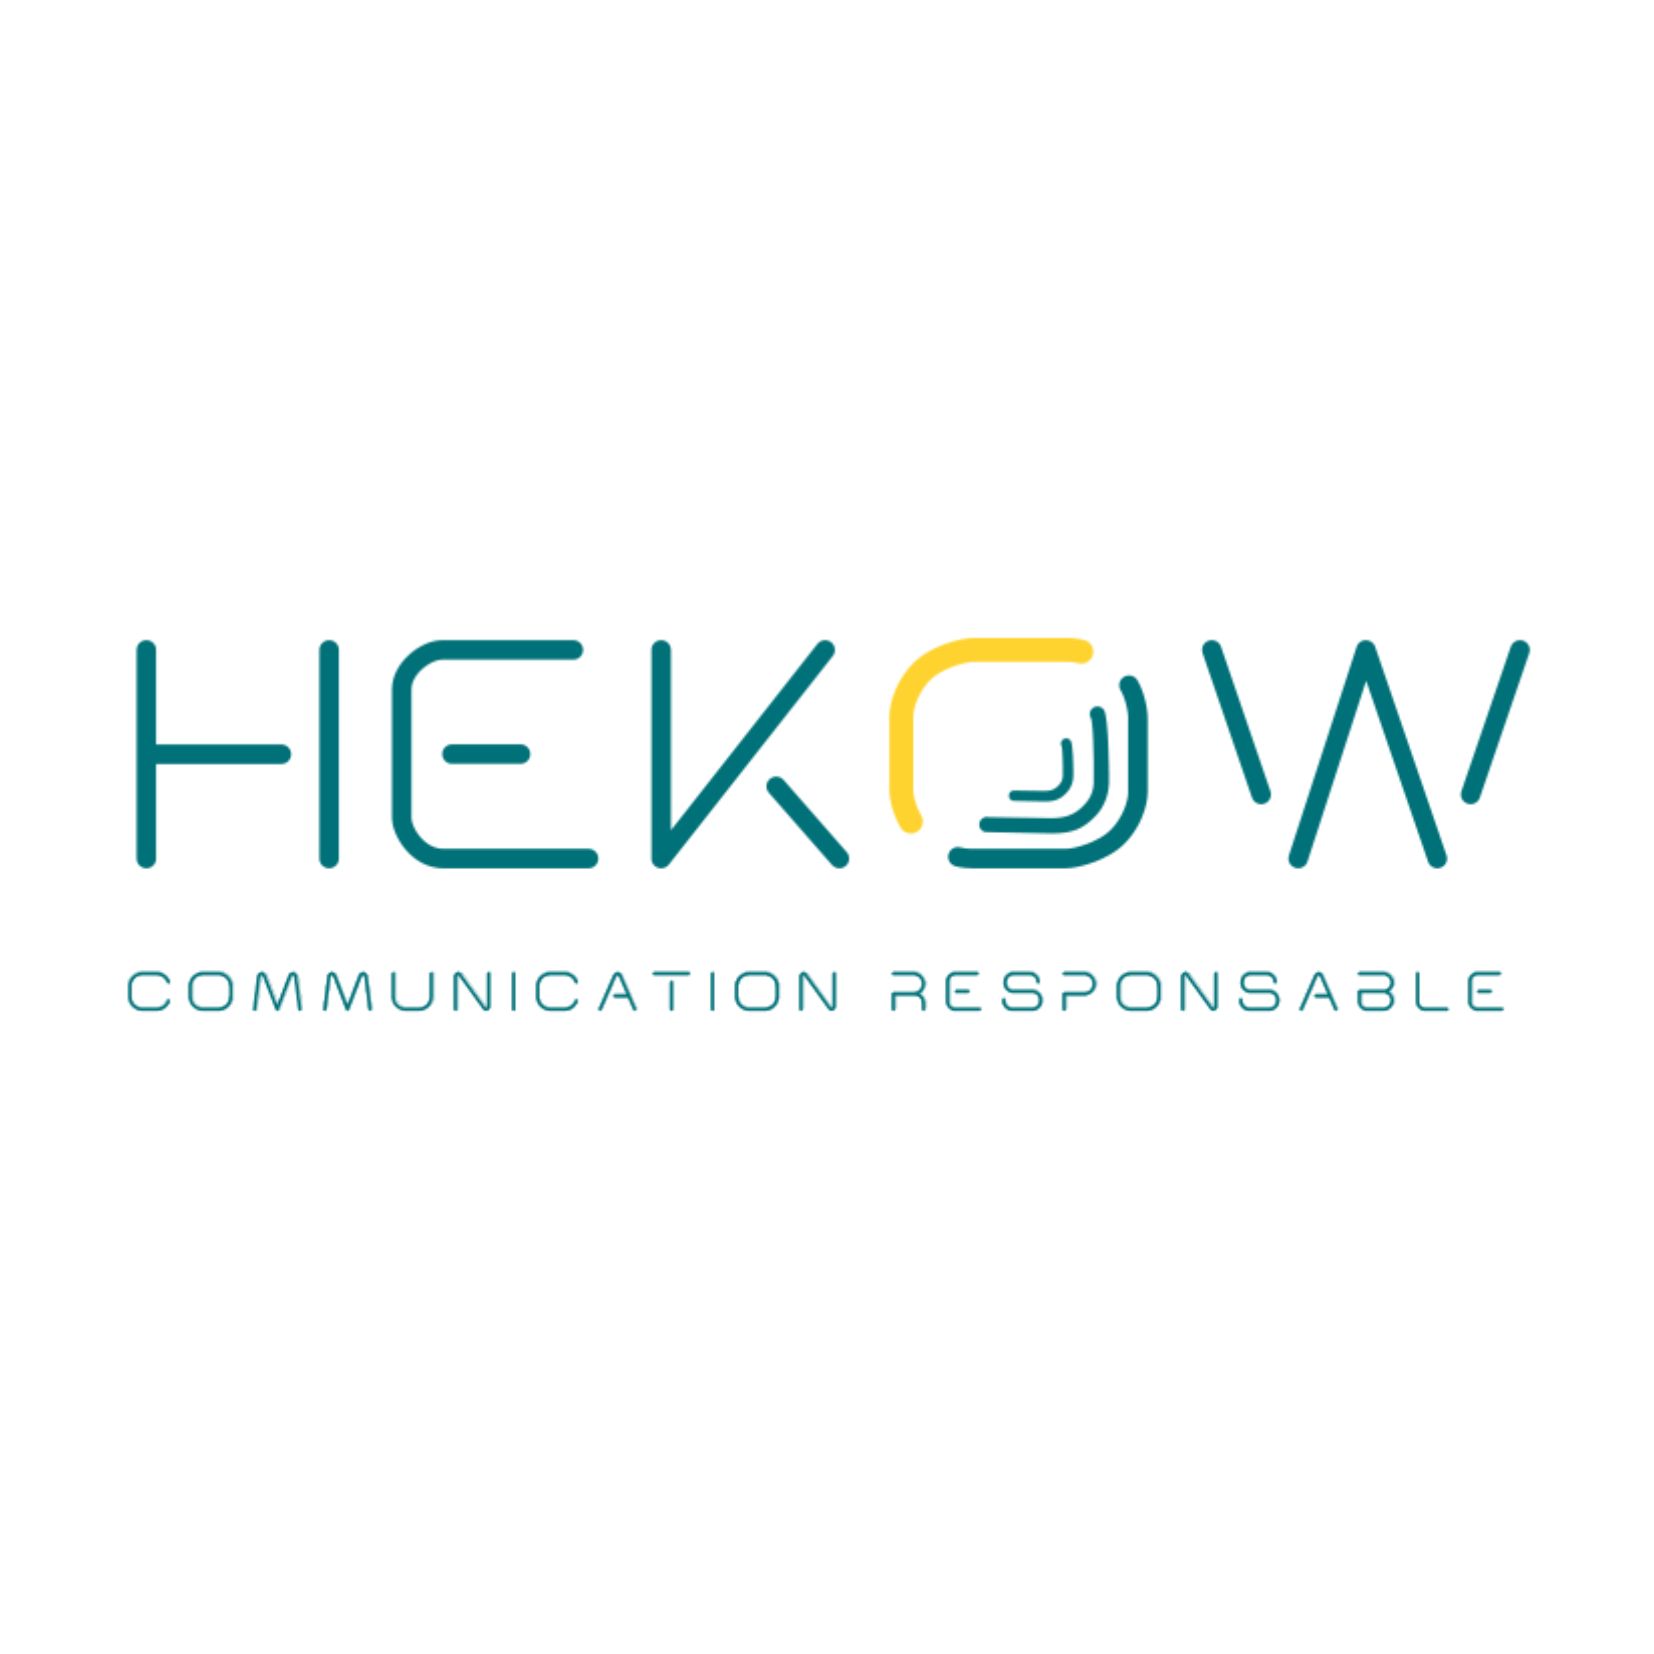  Hekow